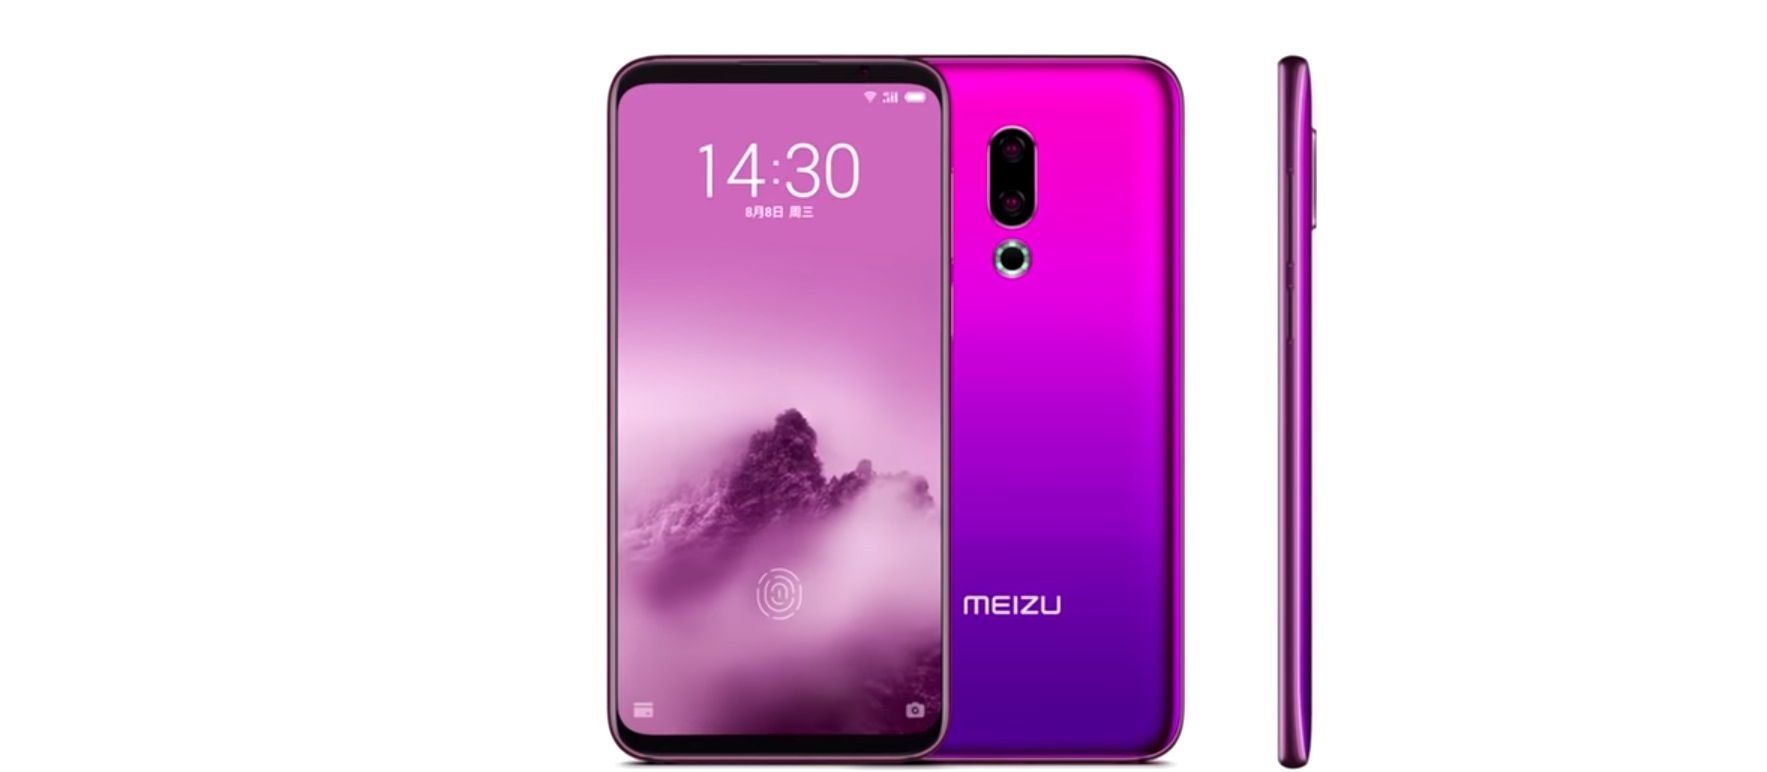 Meizu 16s smarttelefon - fordeler og ulemper